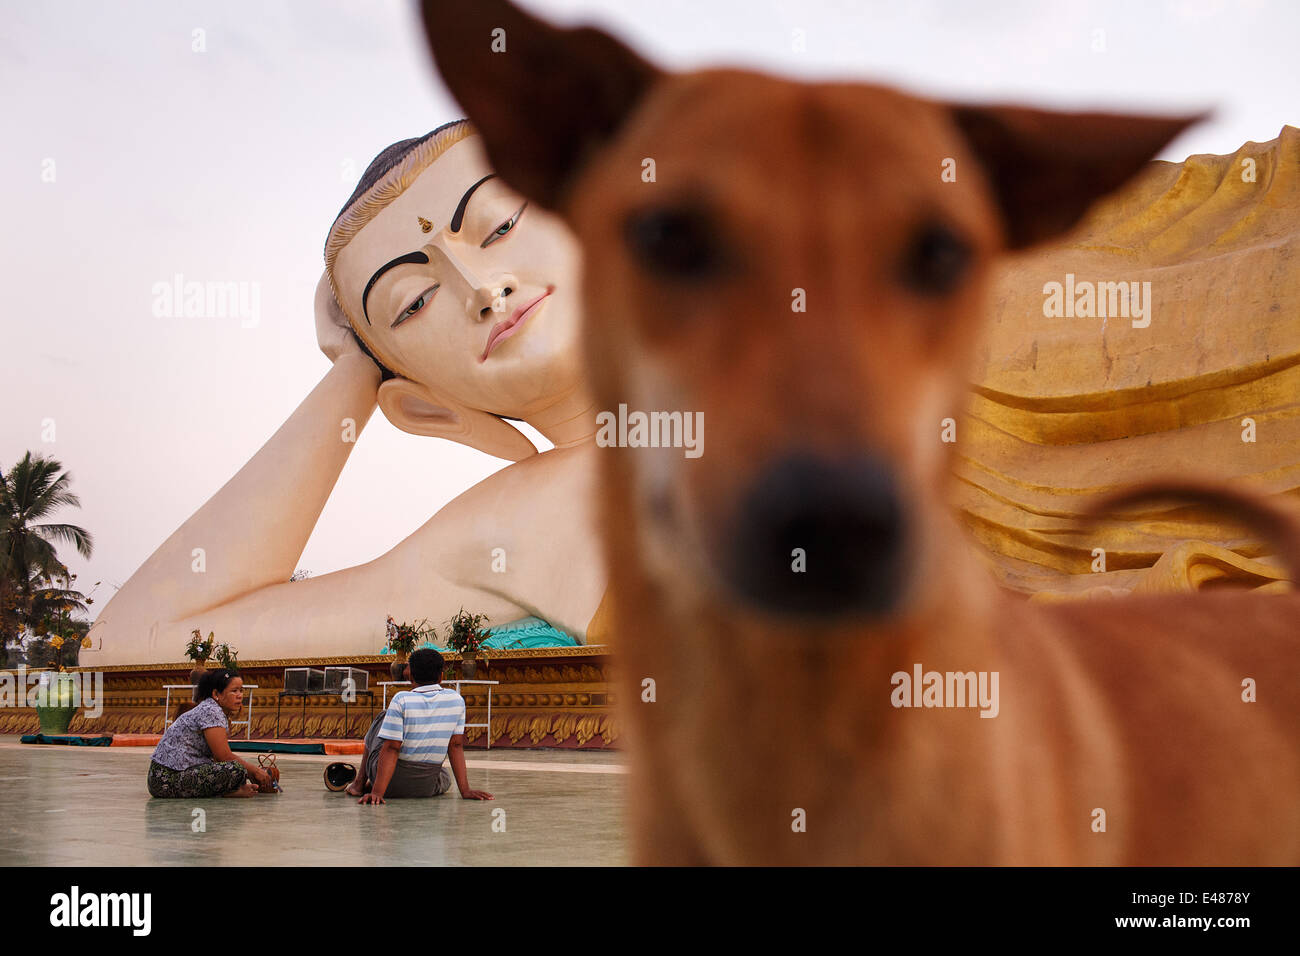 Un perro, la gente y la gran piscina Buda reclinado de Bago (Pegu), Myanmar (Birmania) Foto de stock